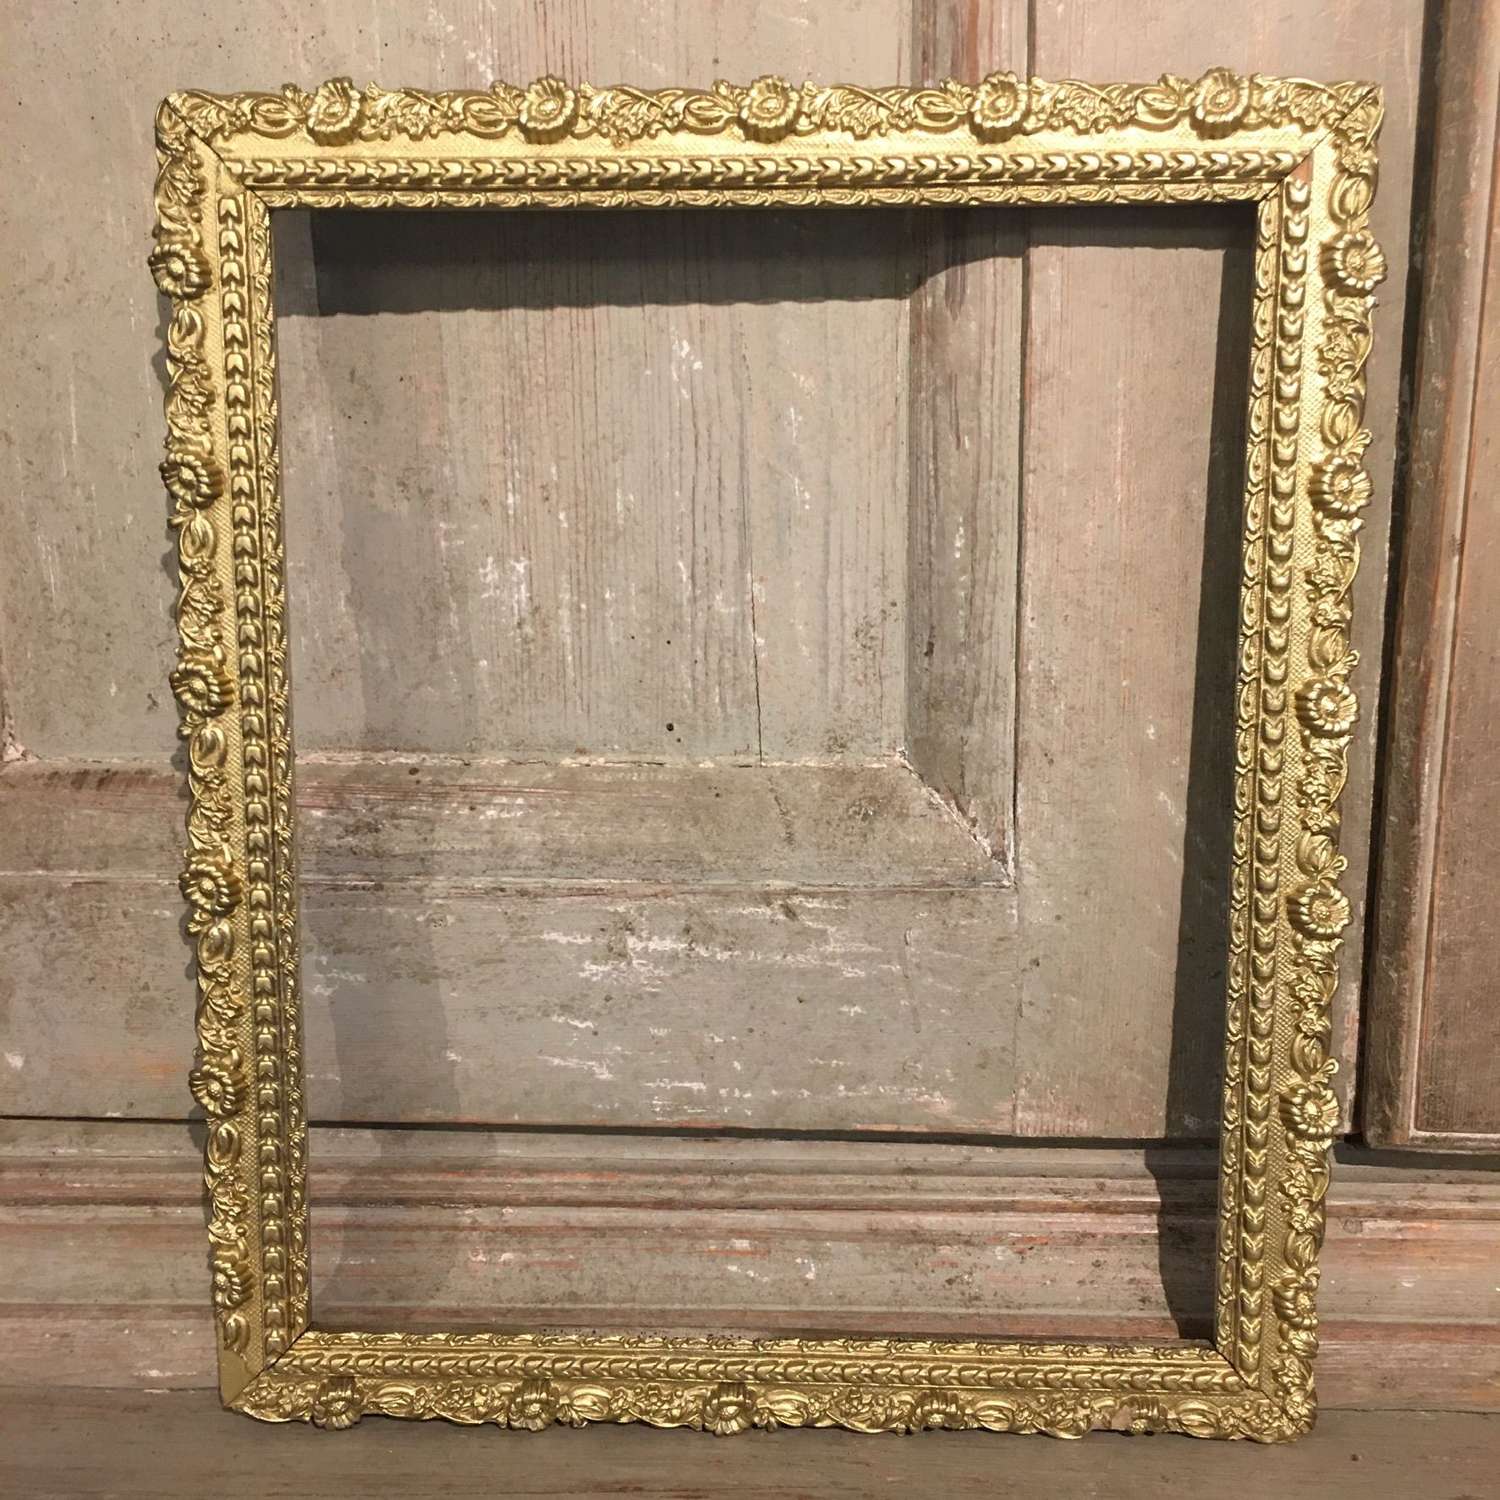 Antique gilded wooden frame